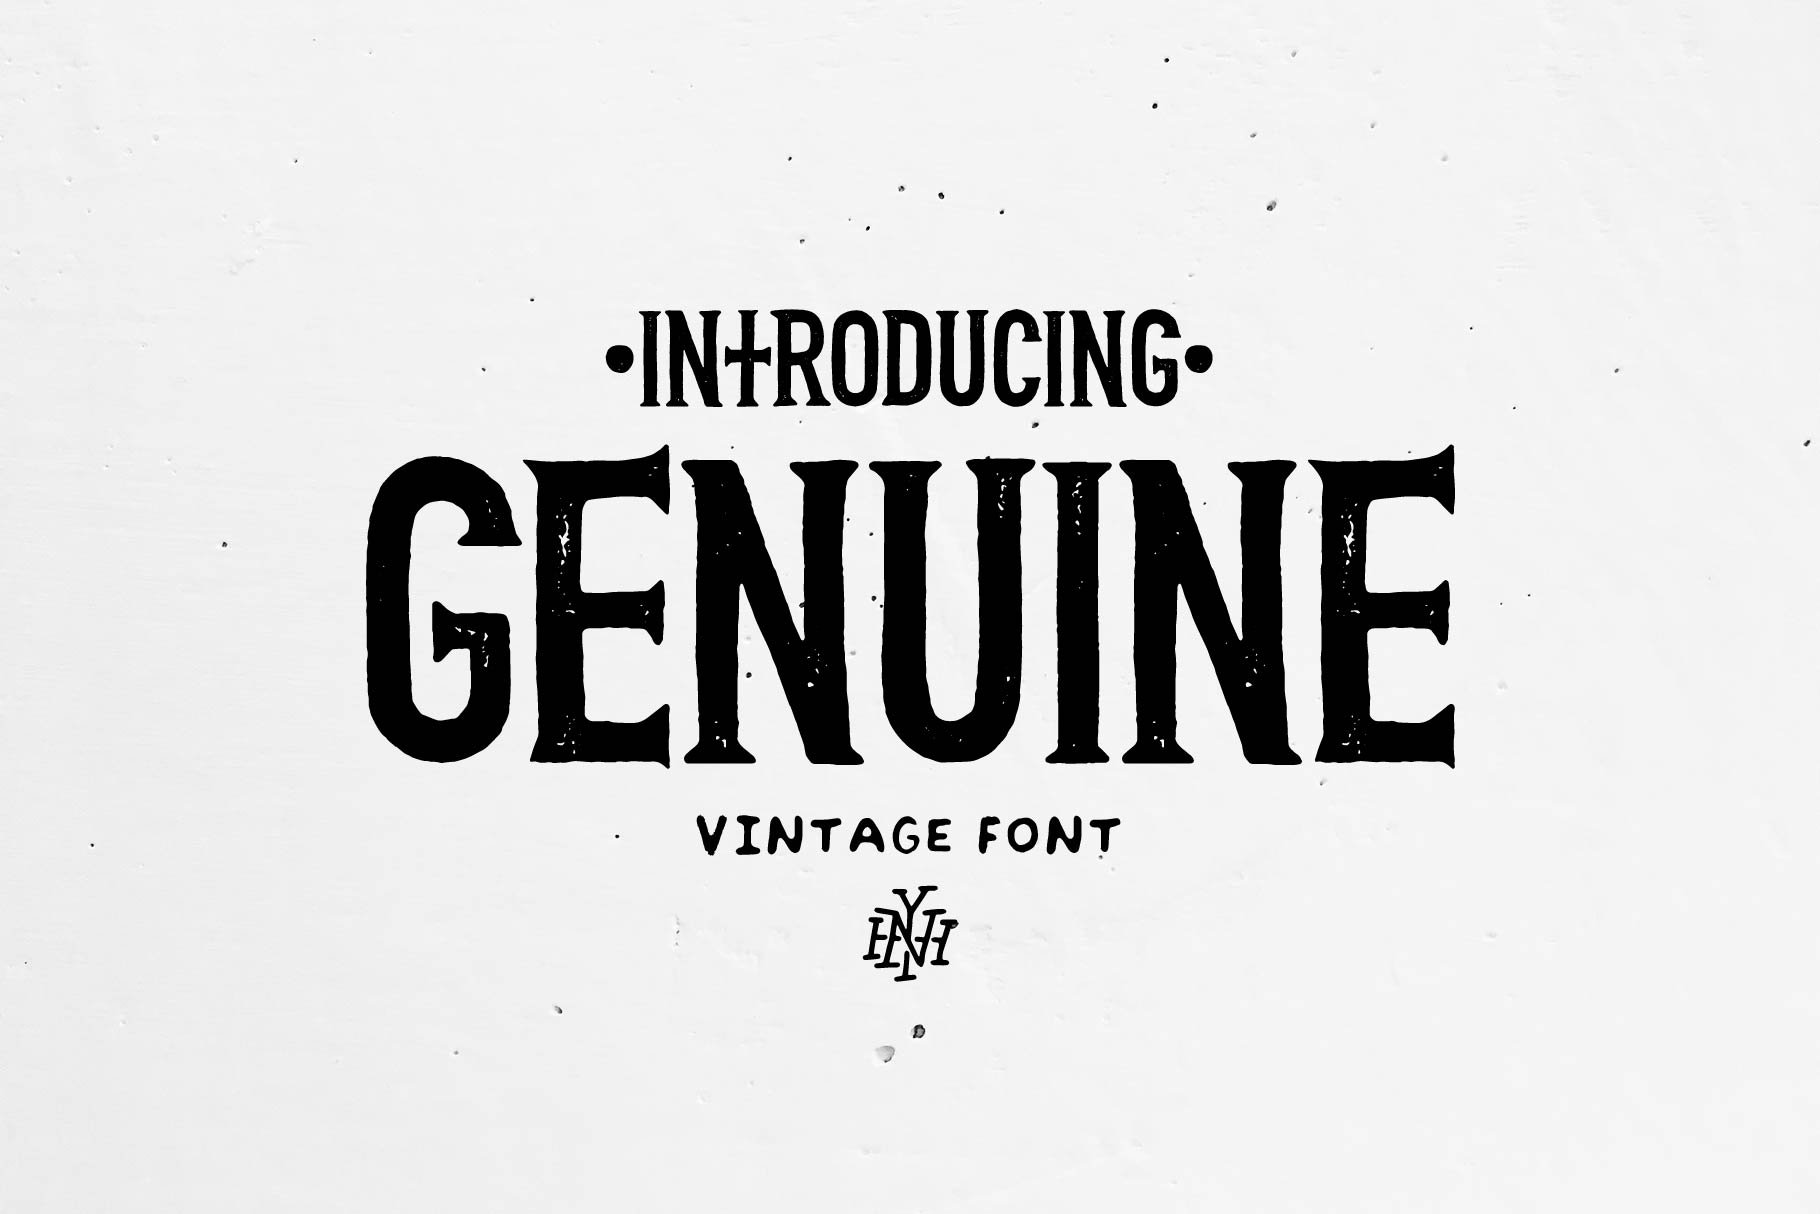 Genuine | Vintage font cover image.